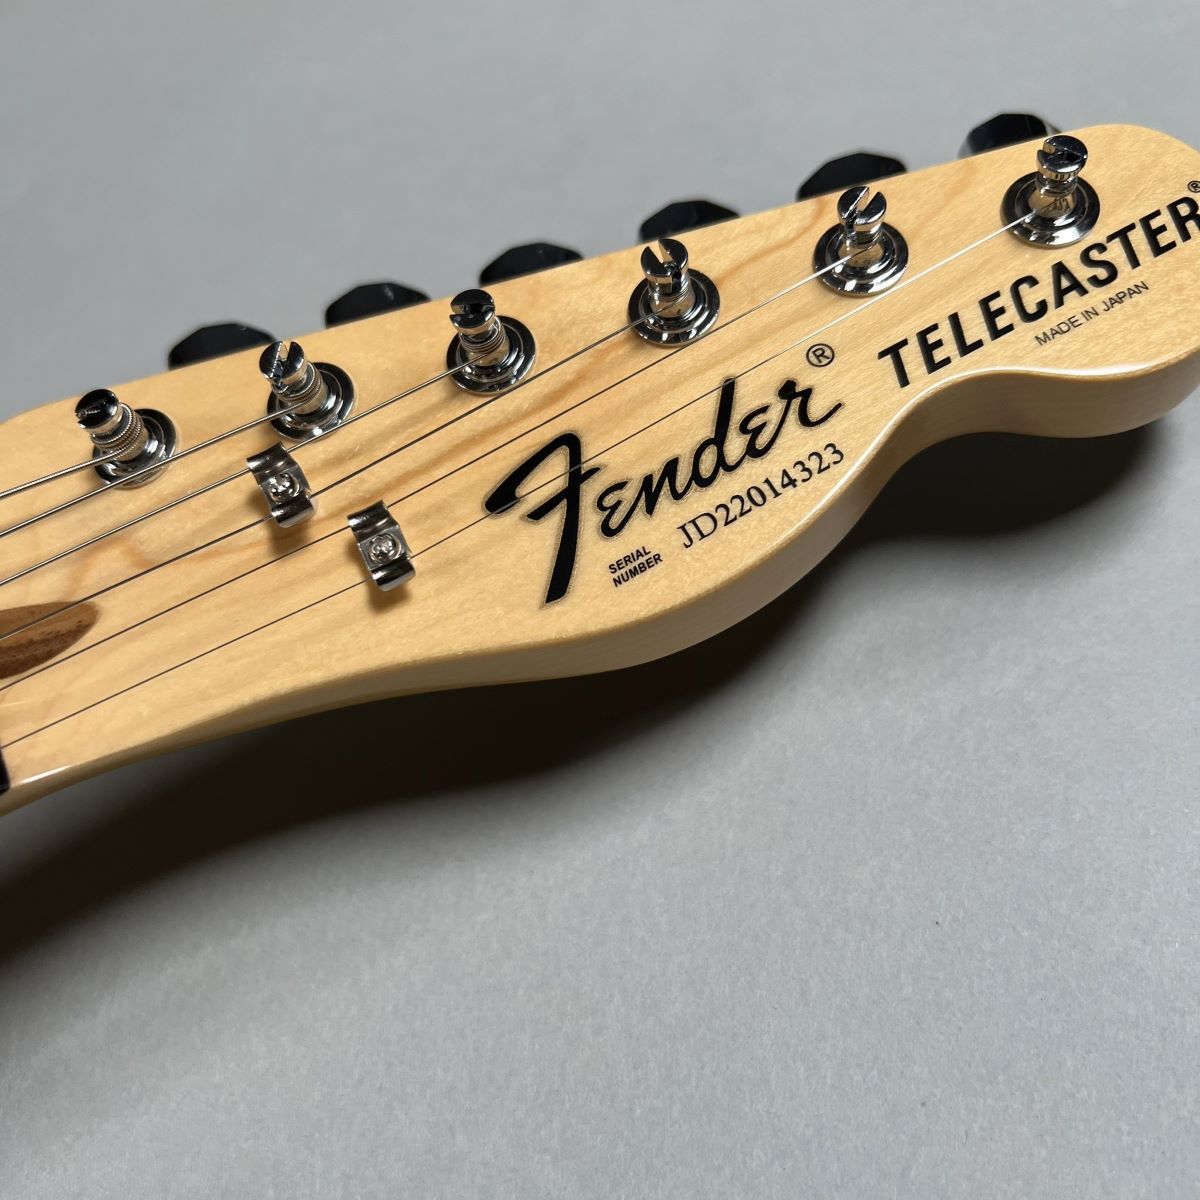 Fender Made in Japan Limited International Color Telecaster Maui 